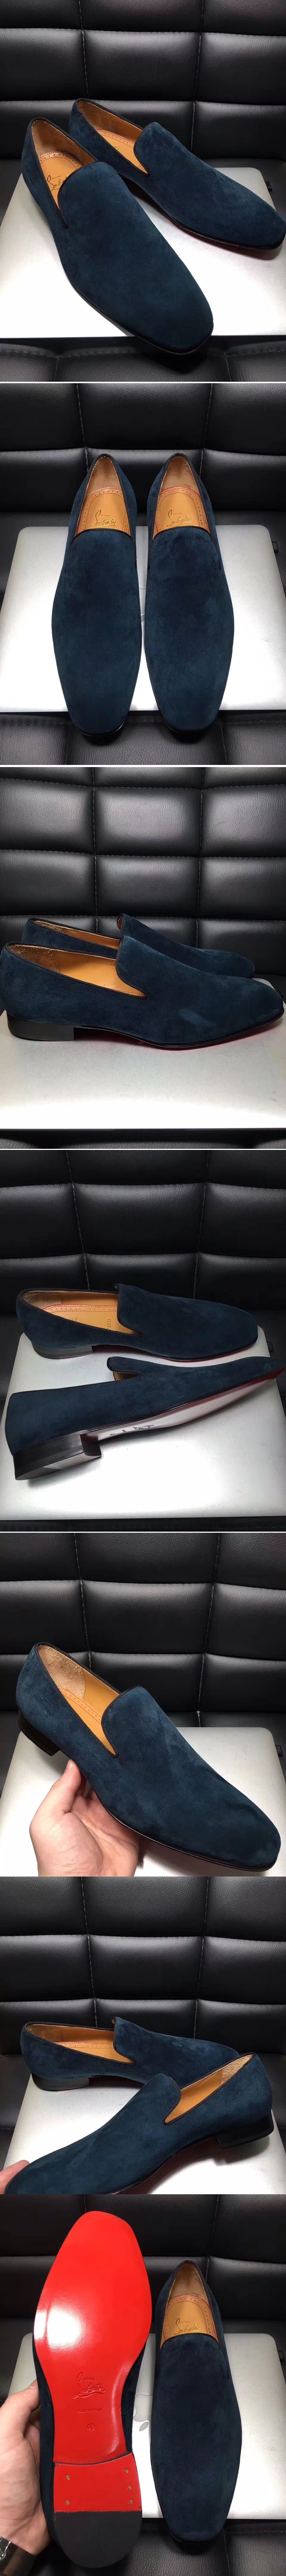 Replica Christian Louboutin Shoes